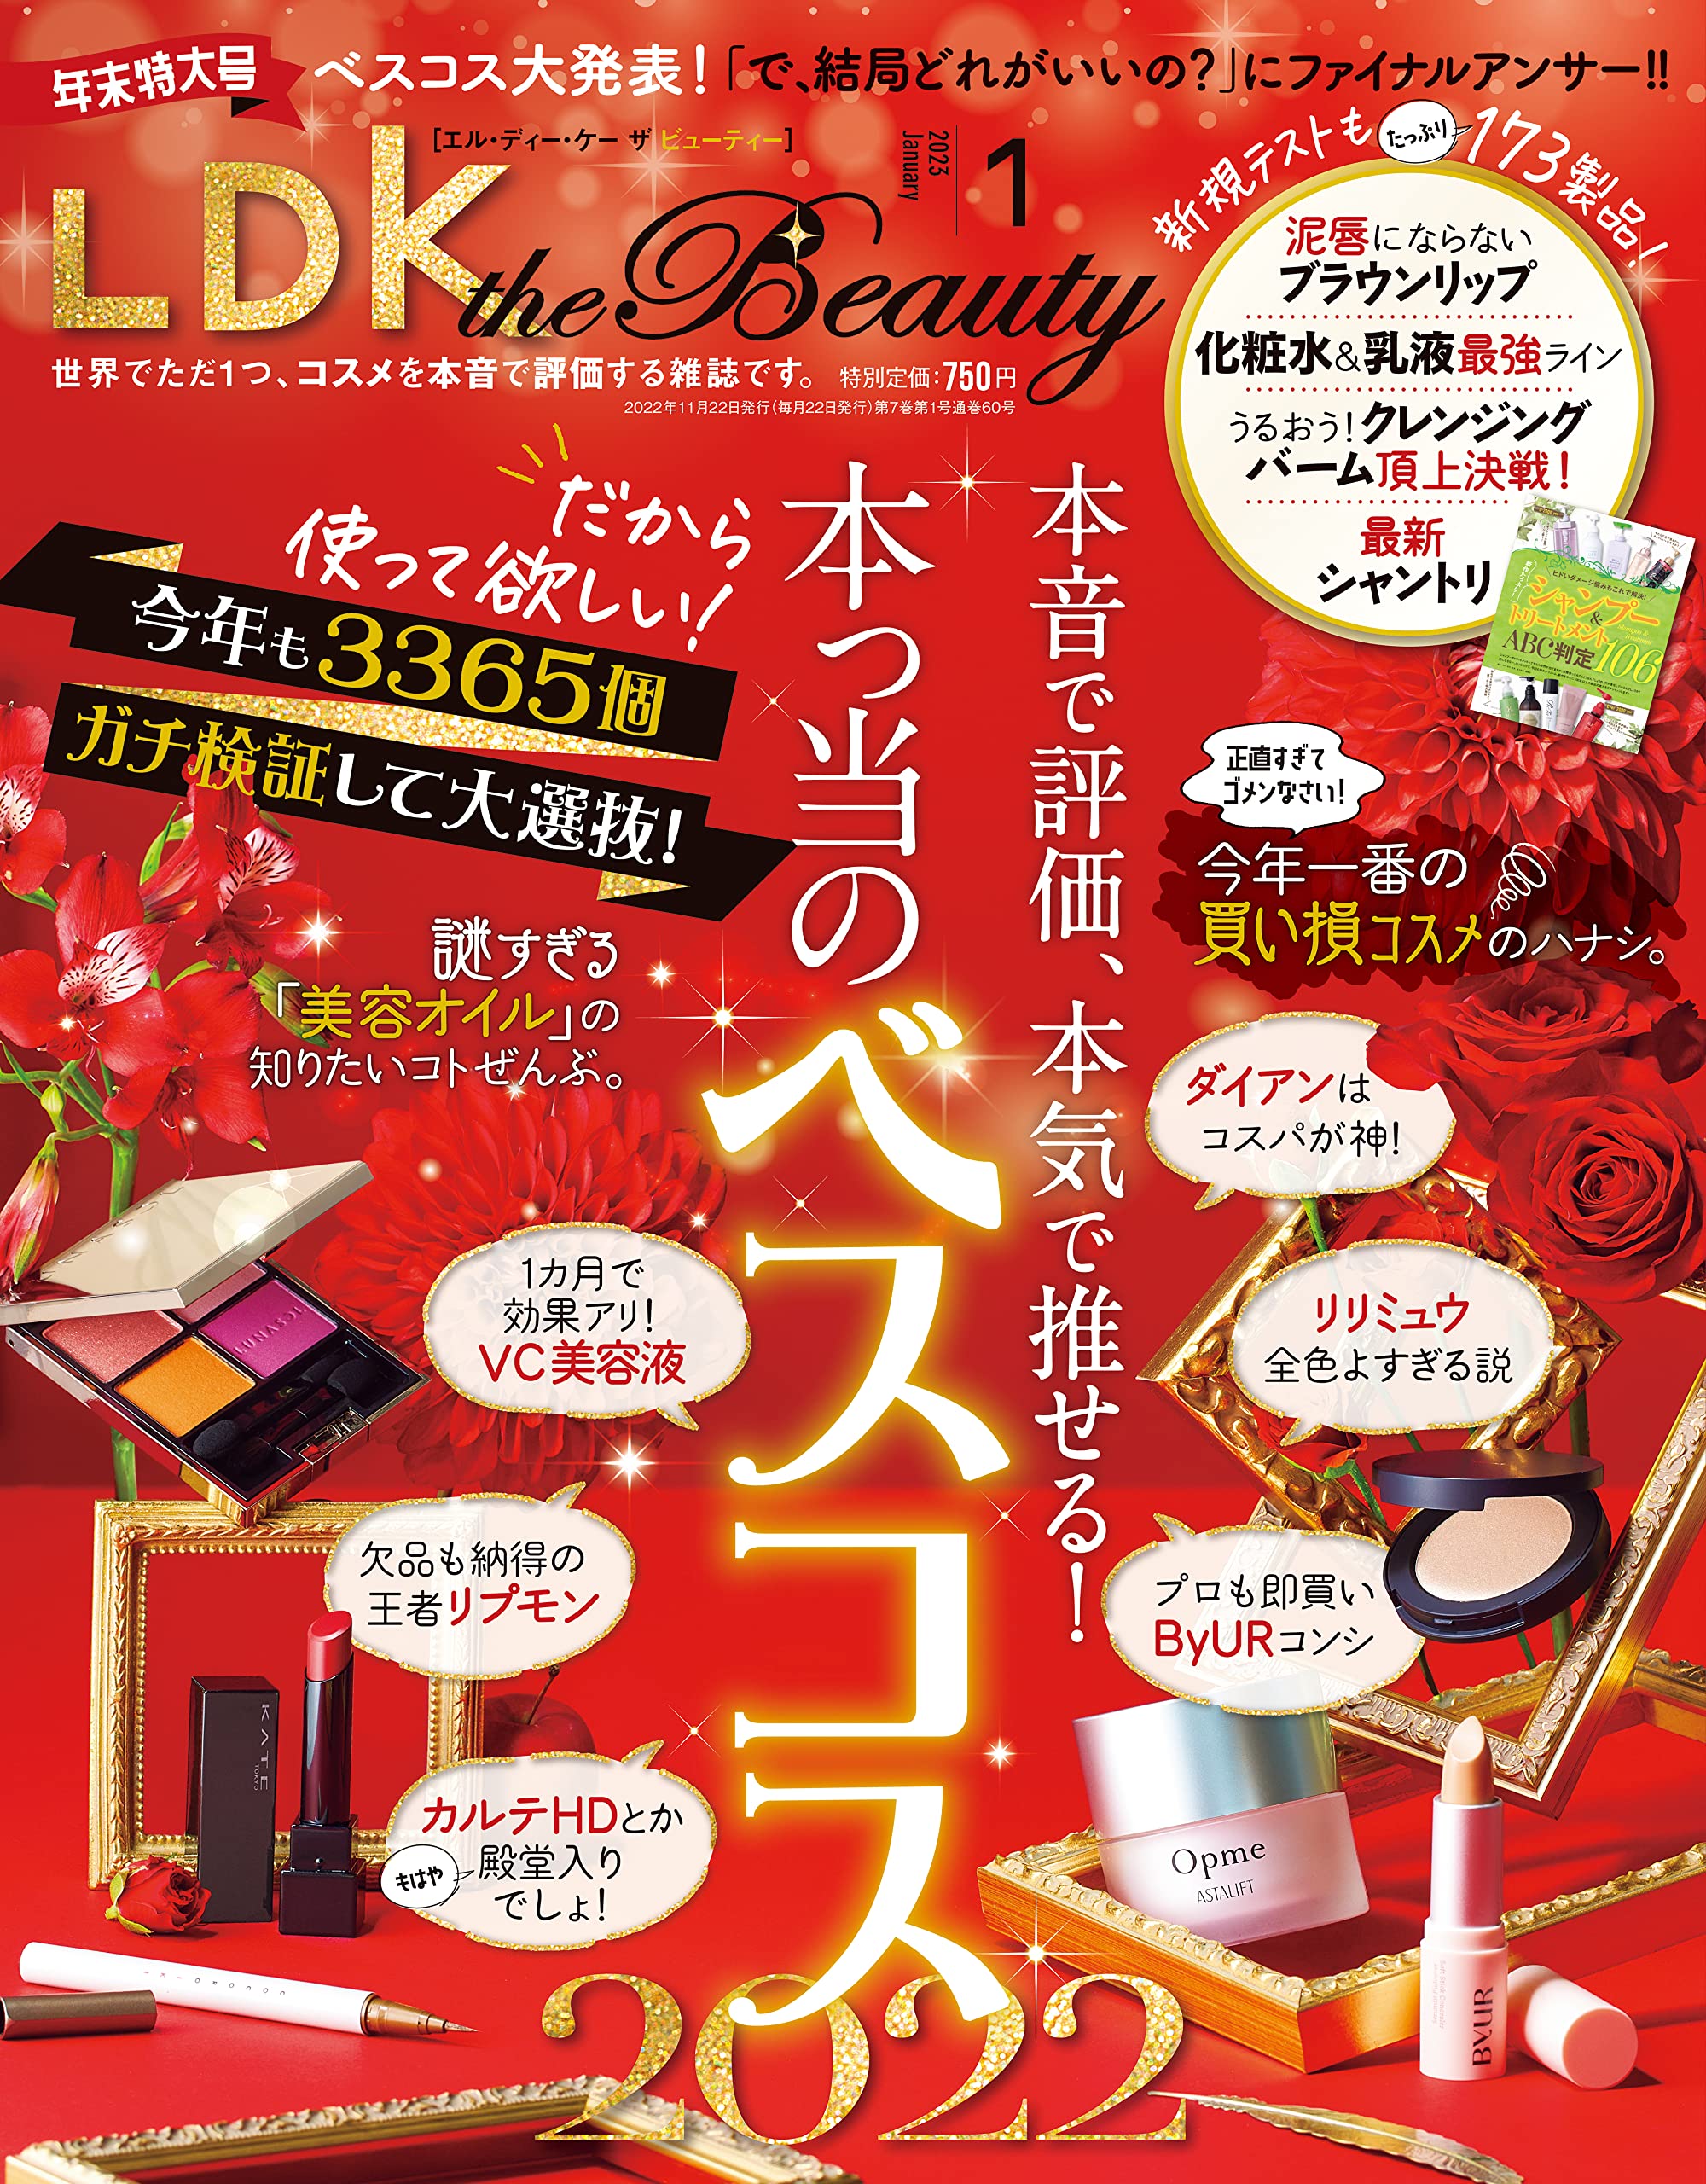 乾燥対策アイテムをラインで評価 『LDK the Beauty』1月号